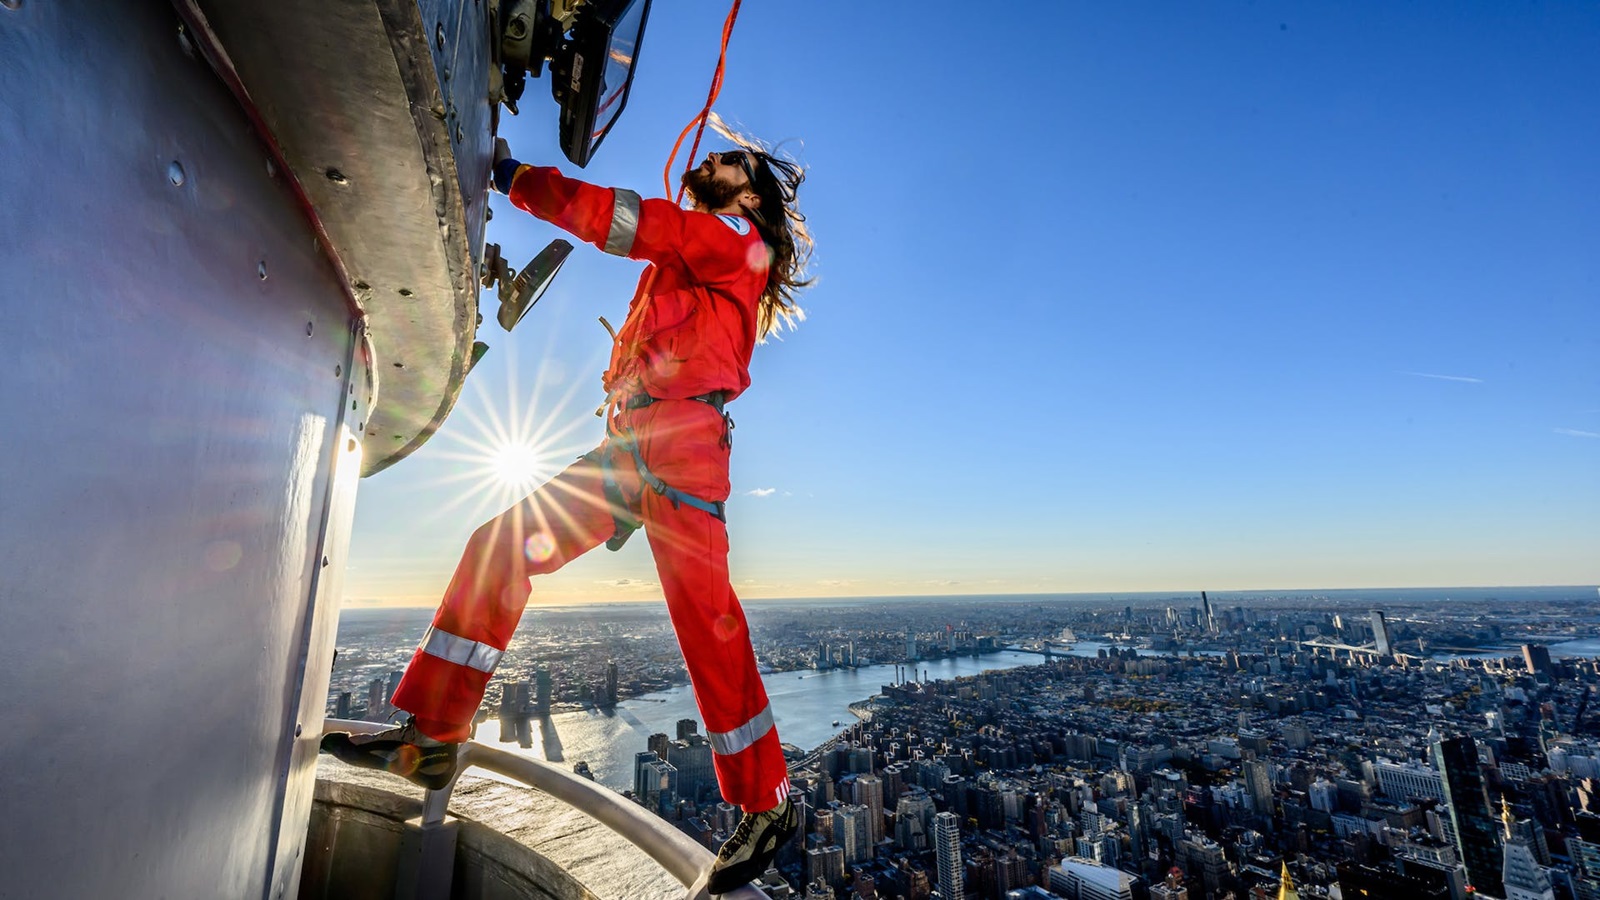 Jared Leto scala l'Empire State Building per celebrare il tour dei 30 Seconds to Mars, ecco le foto e i video